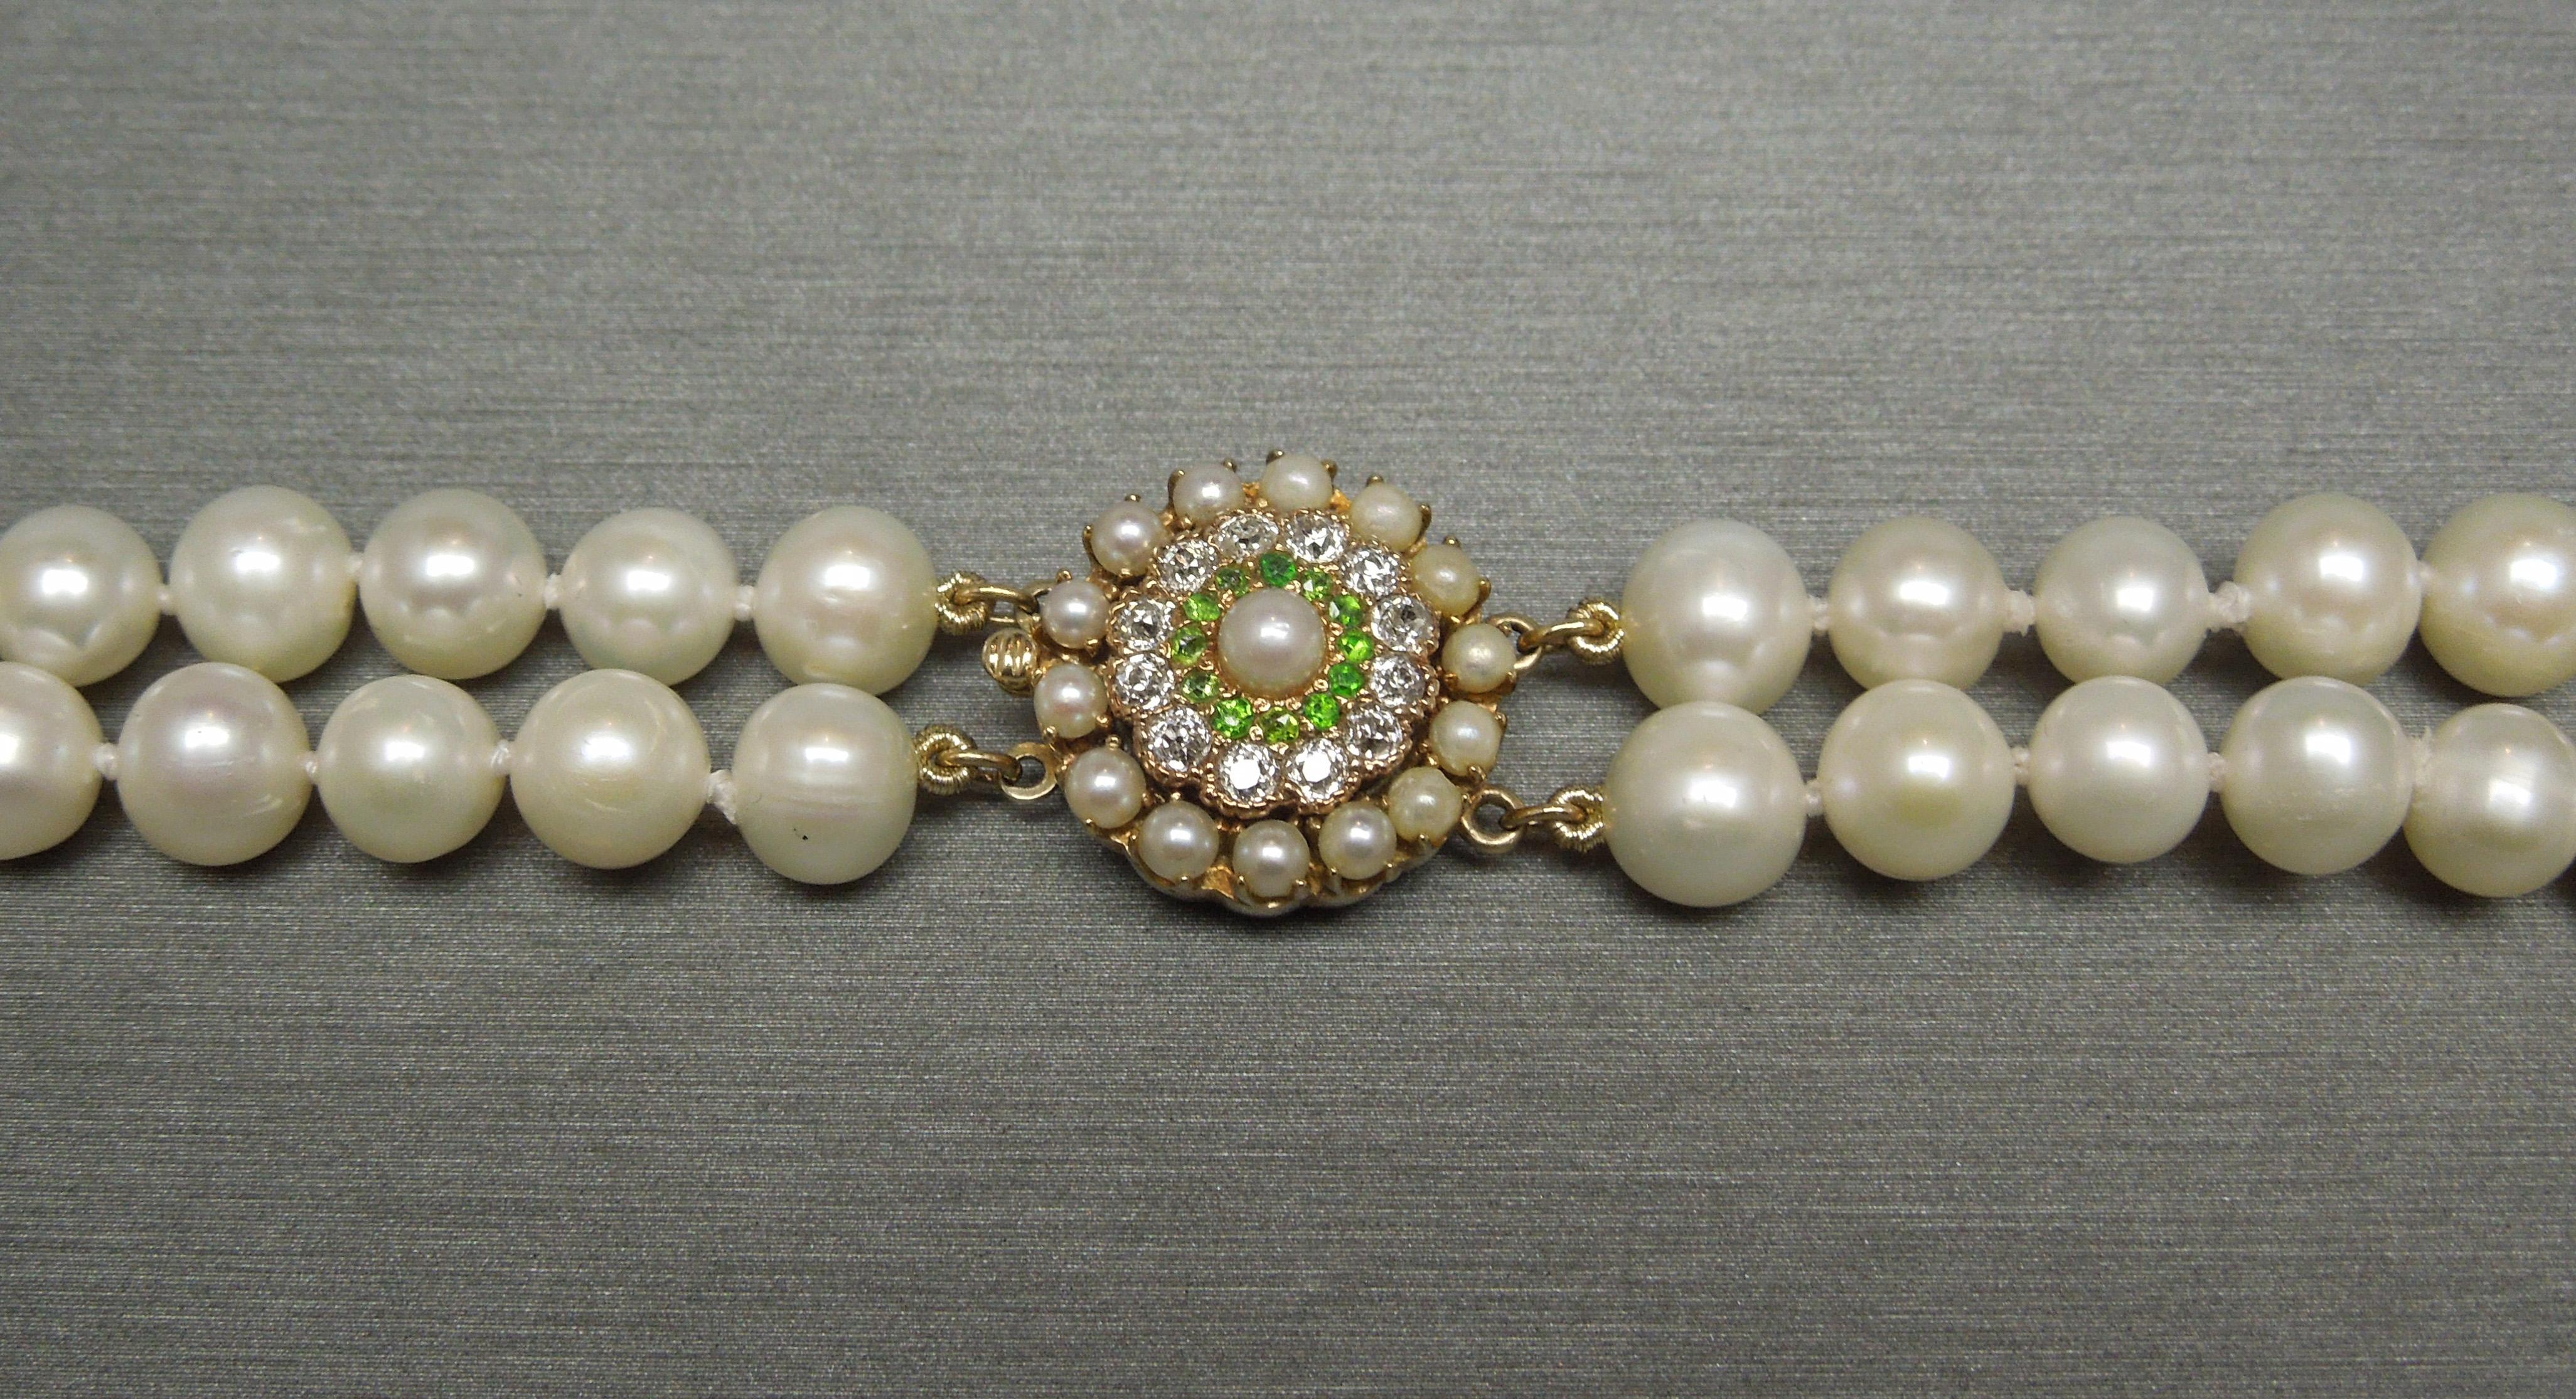 Diese doppelreihige Art Deco-Perlen-Cocktail-Halskette besteht aus 2 Strängen natürlicher Zuchtperlen mit einer Größe von 6,5-7,5 mm. Mit einem kreisförmigen 14KT Gold Verschluss, inspiriert von der französischen Art Deco Periode, mit kleineren